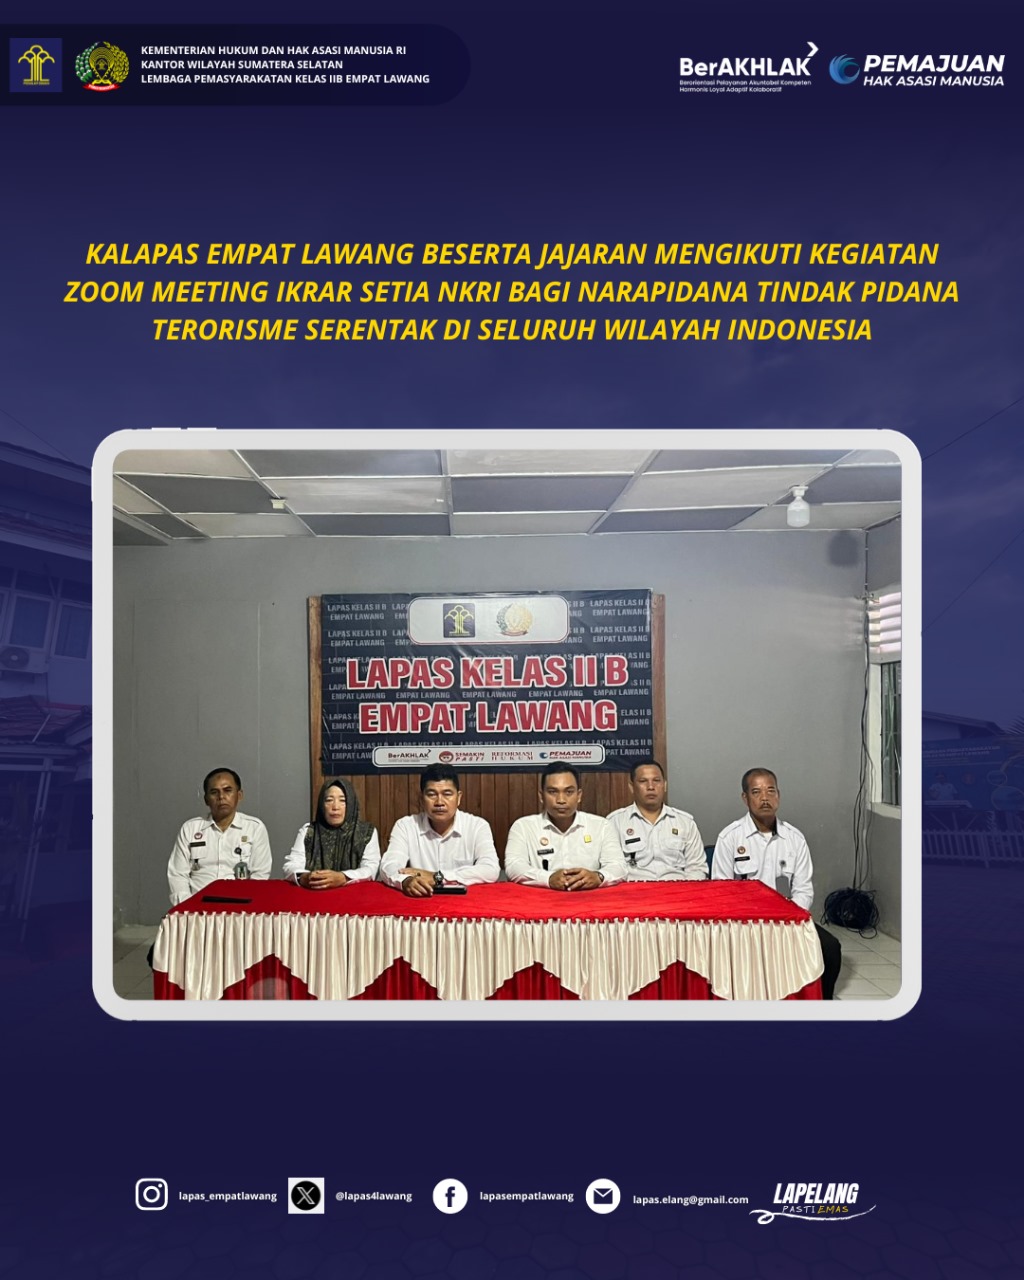 Kalapas Empat Lawang beserta Jajarannya Ikuti Kegiatan Zoom Meeting Ikrar Setia NKRI bagi Napiter Serentak di Seluruh Wilayah Indonesia